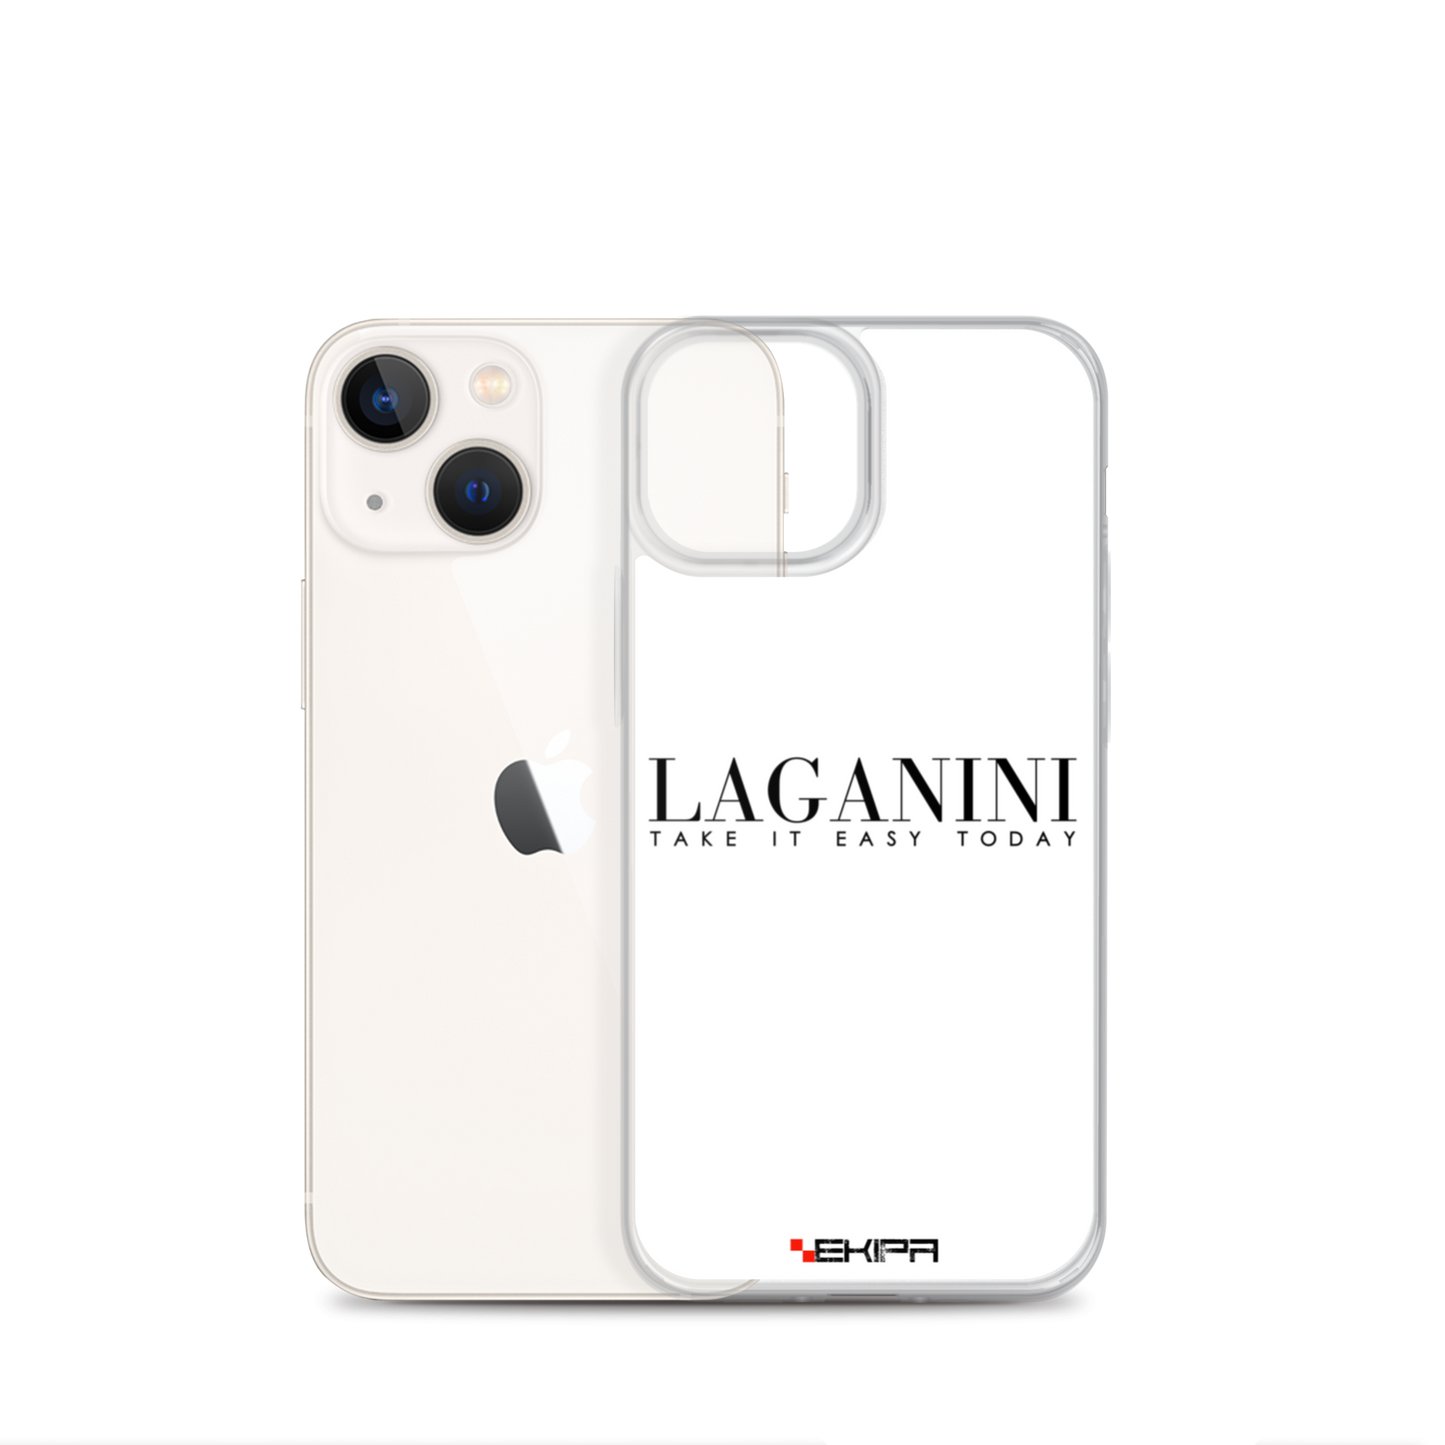 "Laganini" - iPhone case